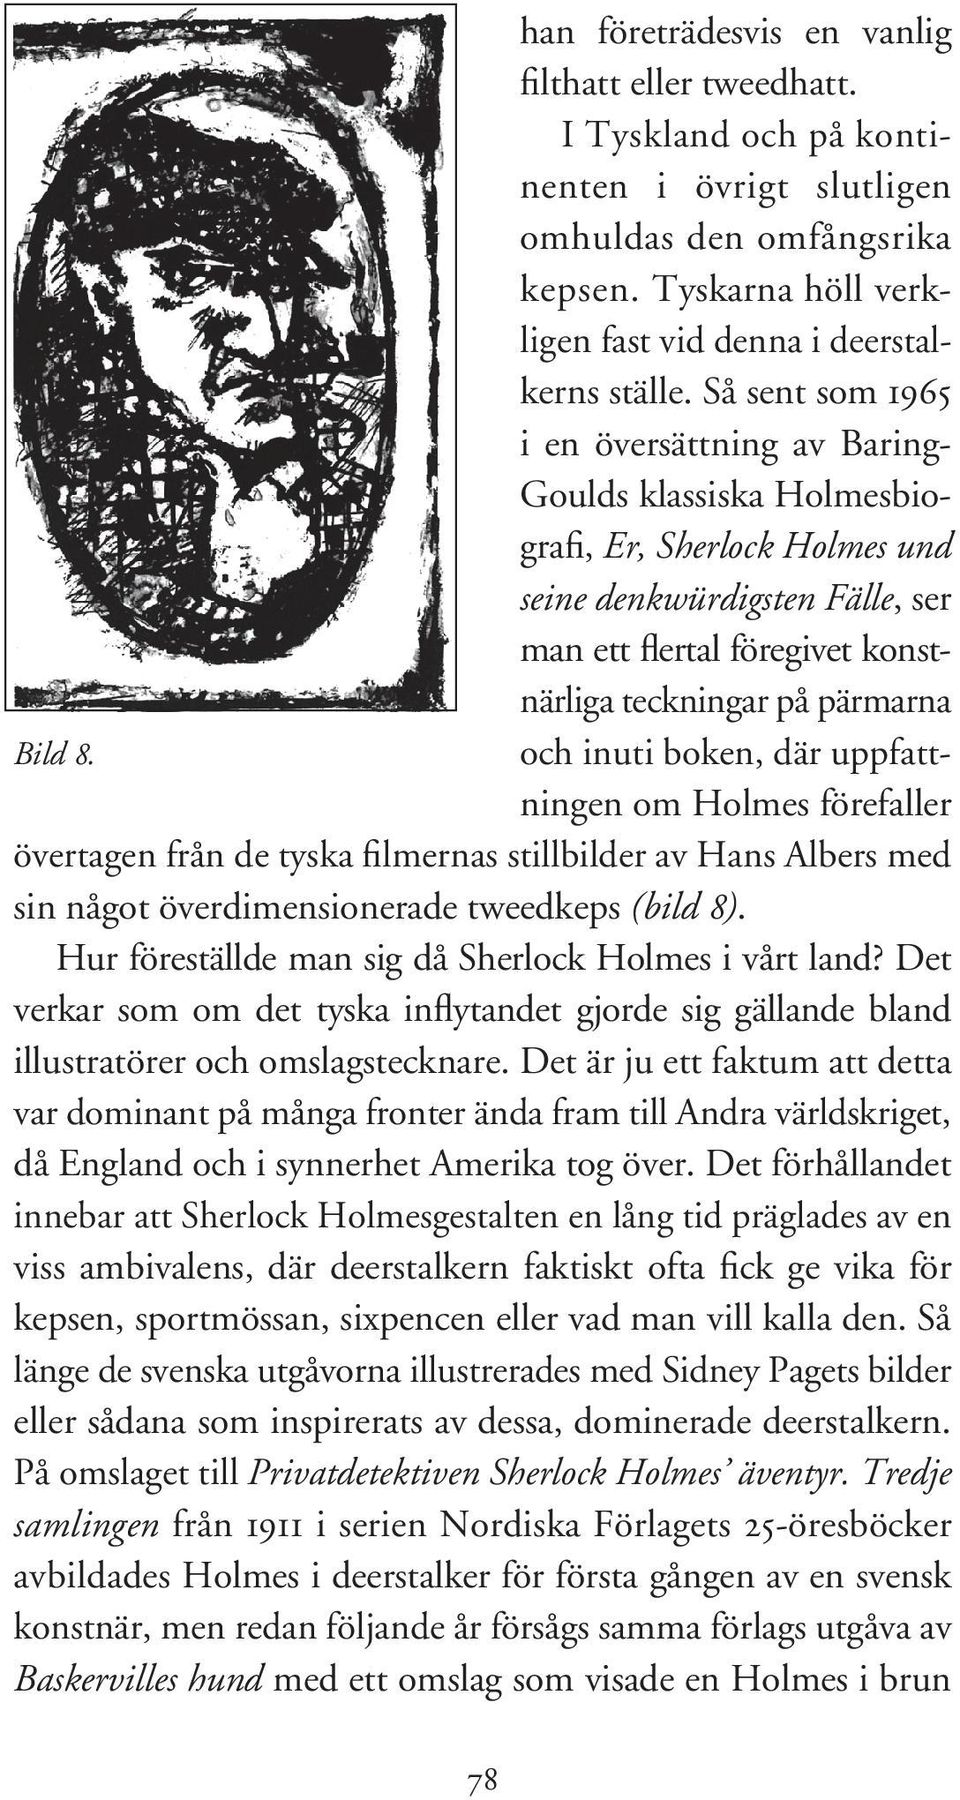 Bild 8. och inuti boken, där uppfattningen om Holmes förefaller övertagen från de tyska filmernas stillbilder av Hans Albers med sin något överdimensionerade tweedkeps (bild 8).